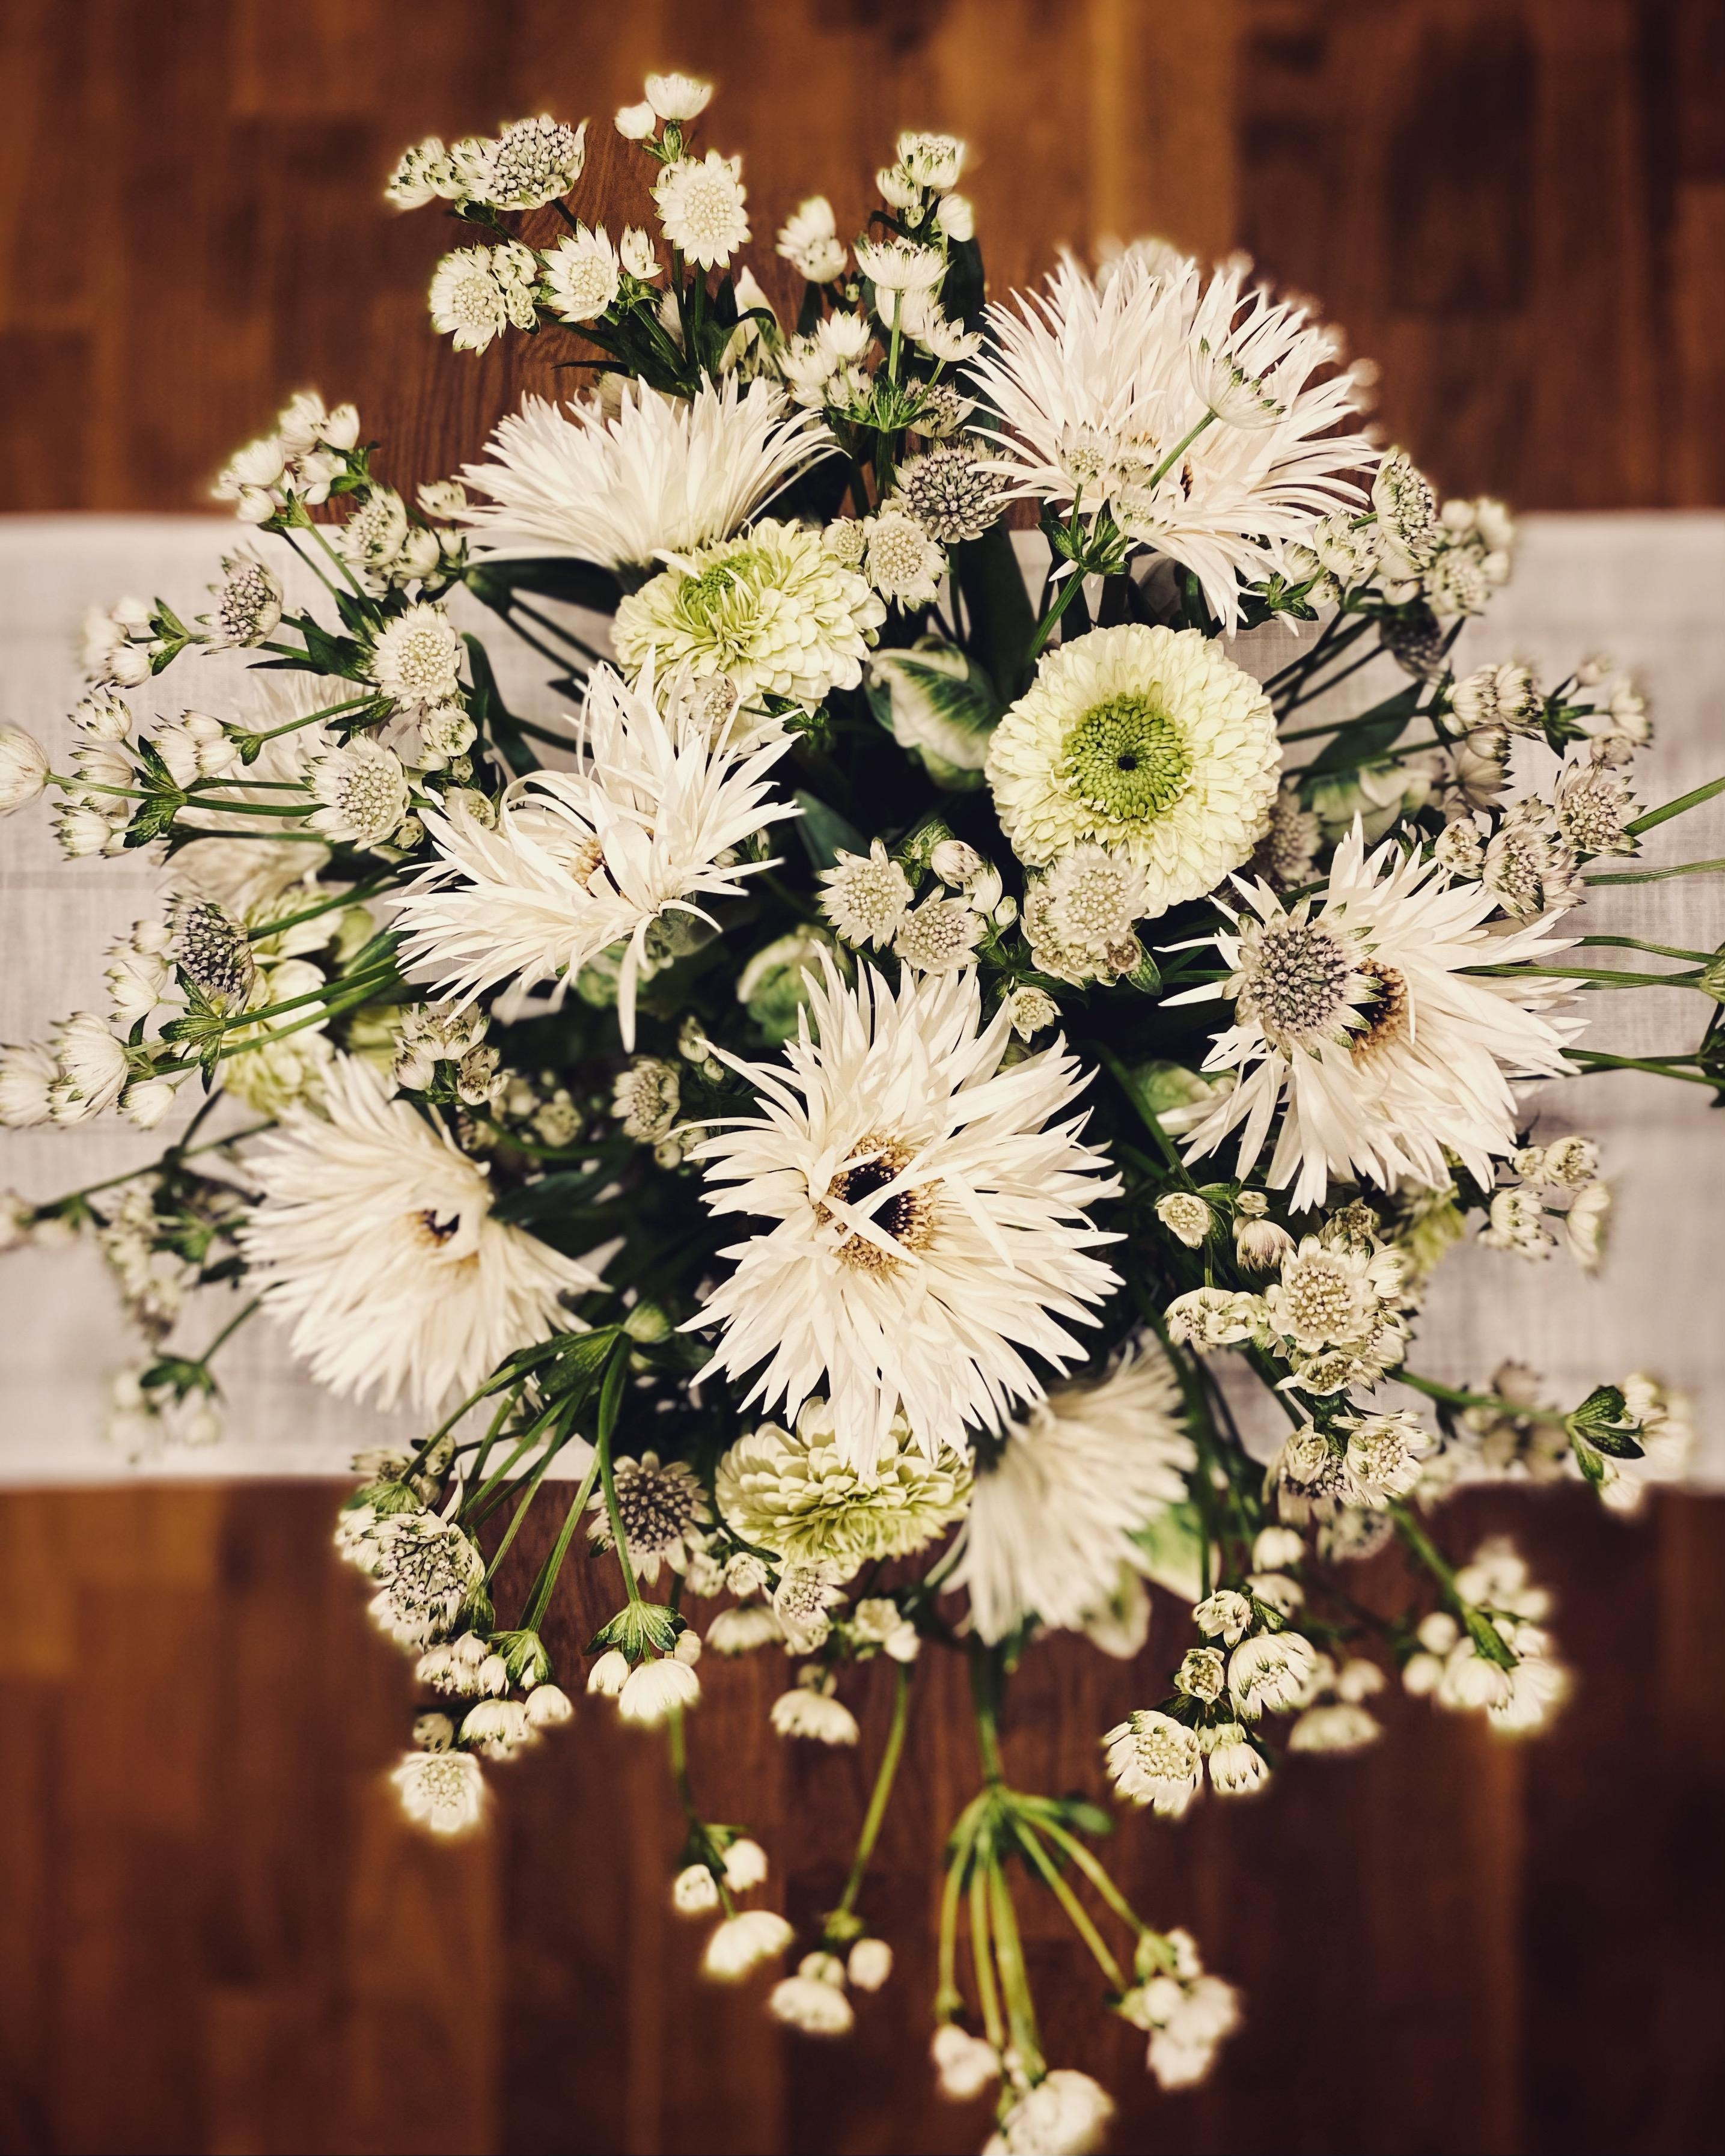 Ich liebe frische Blumen, am liebsten in weiß 🤍 was sind eure Lieblingsblumen? #freshflowerfriday #couchstyle